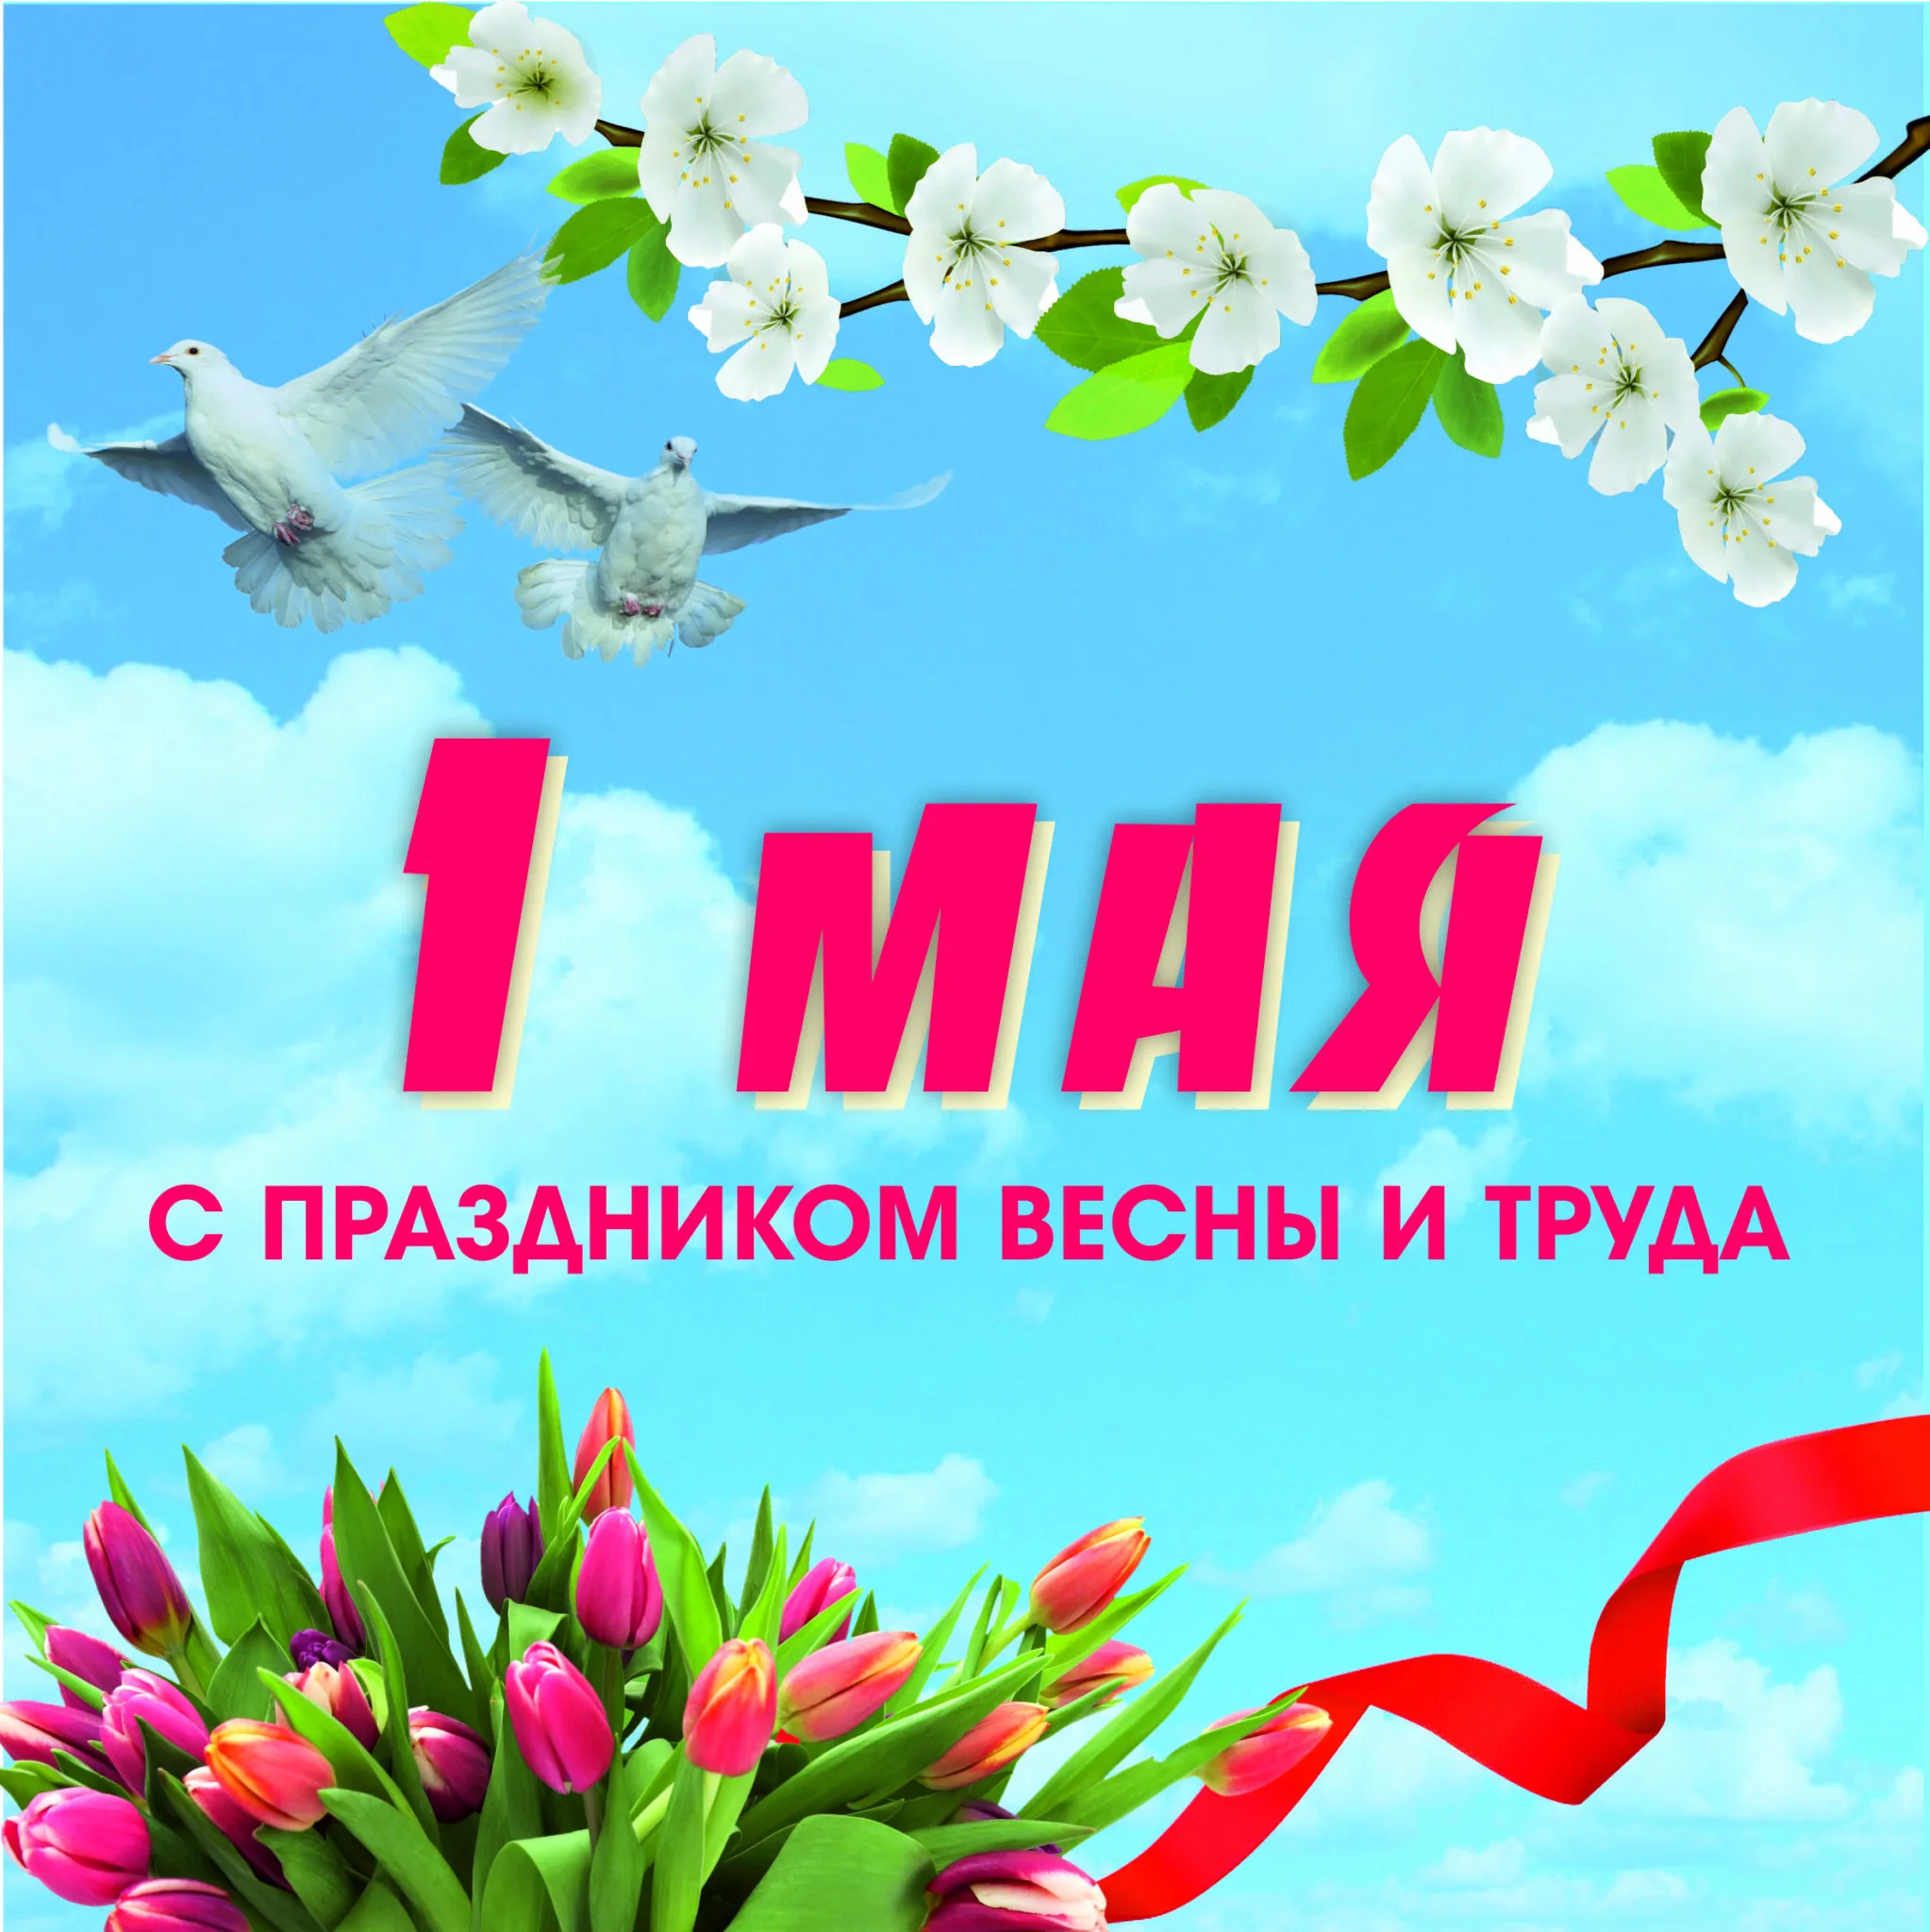 Праздник 1 мая официальное название. 1 Мая праздник. 1 Мая праздник весны и труда. Поздравление с 1 мая. Поздравления с первым мая.